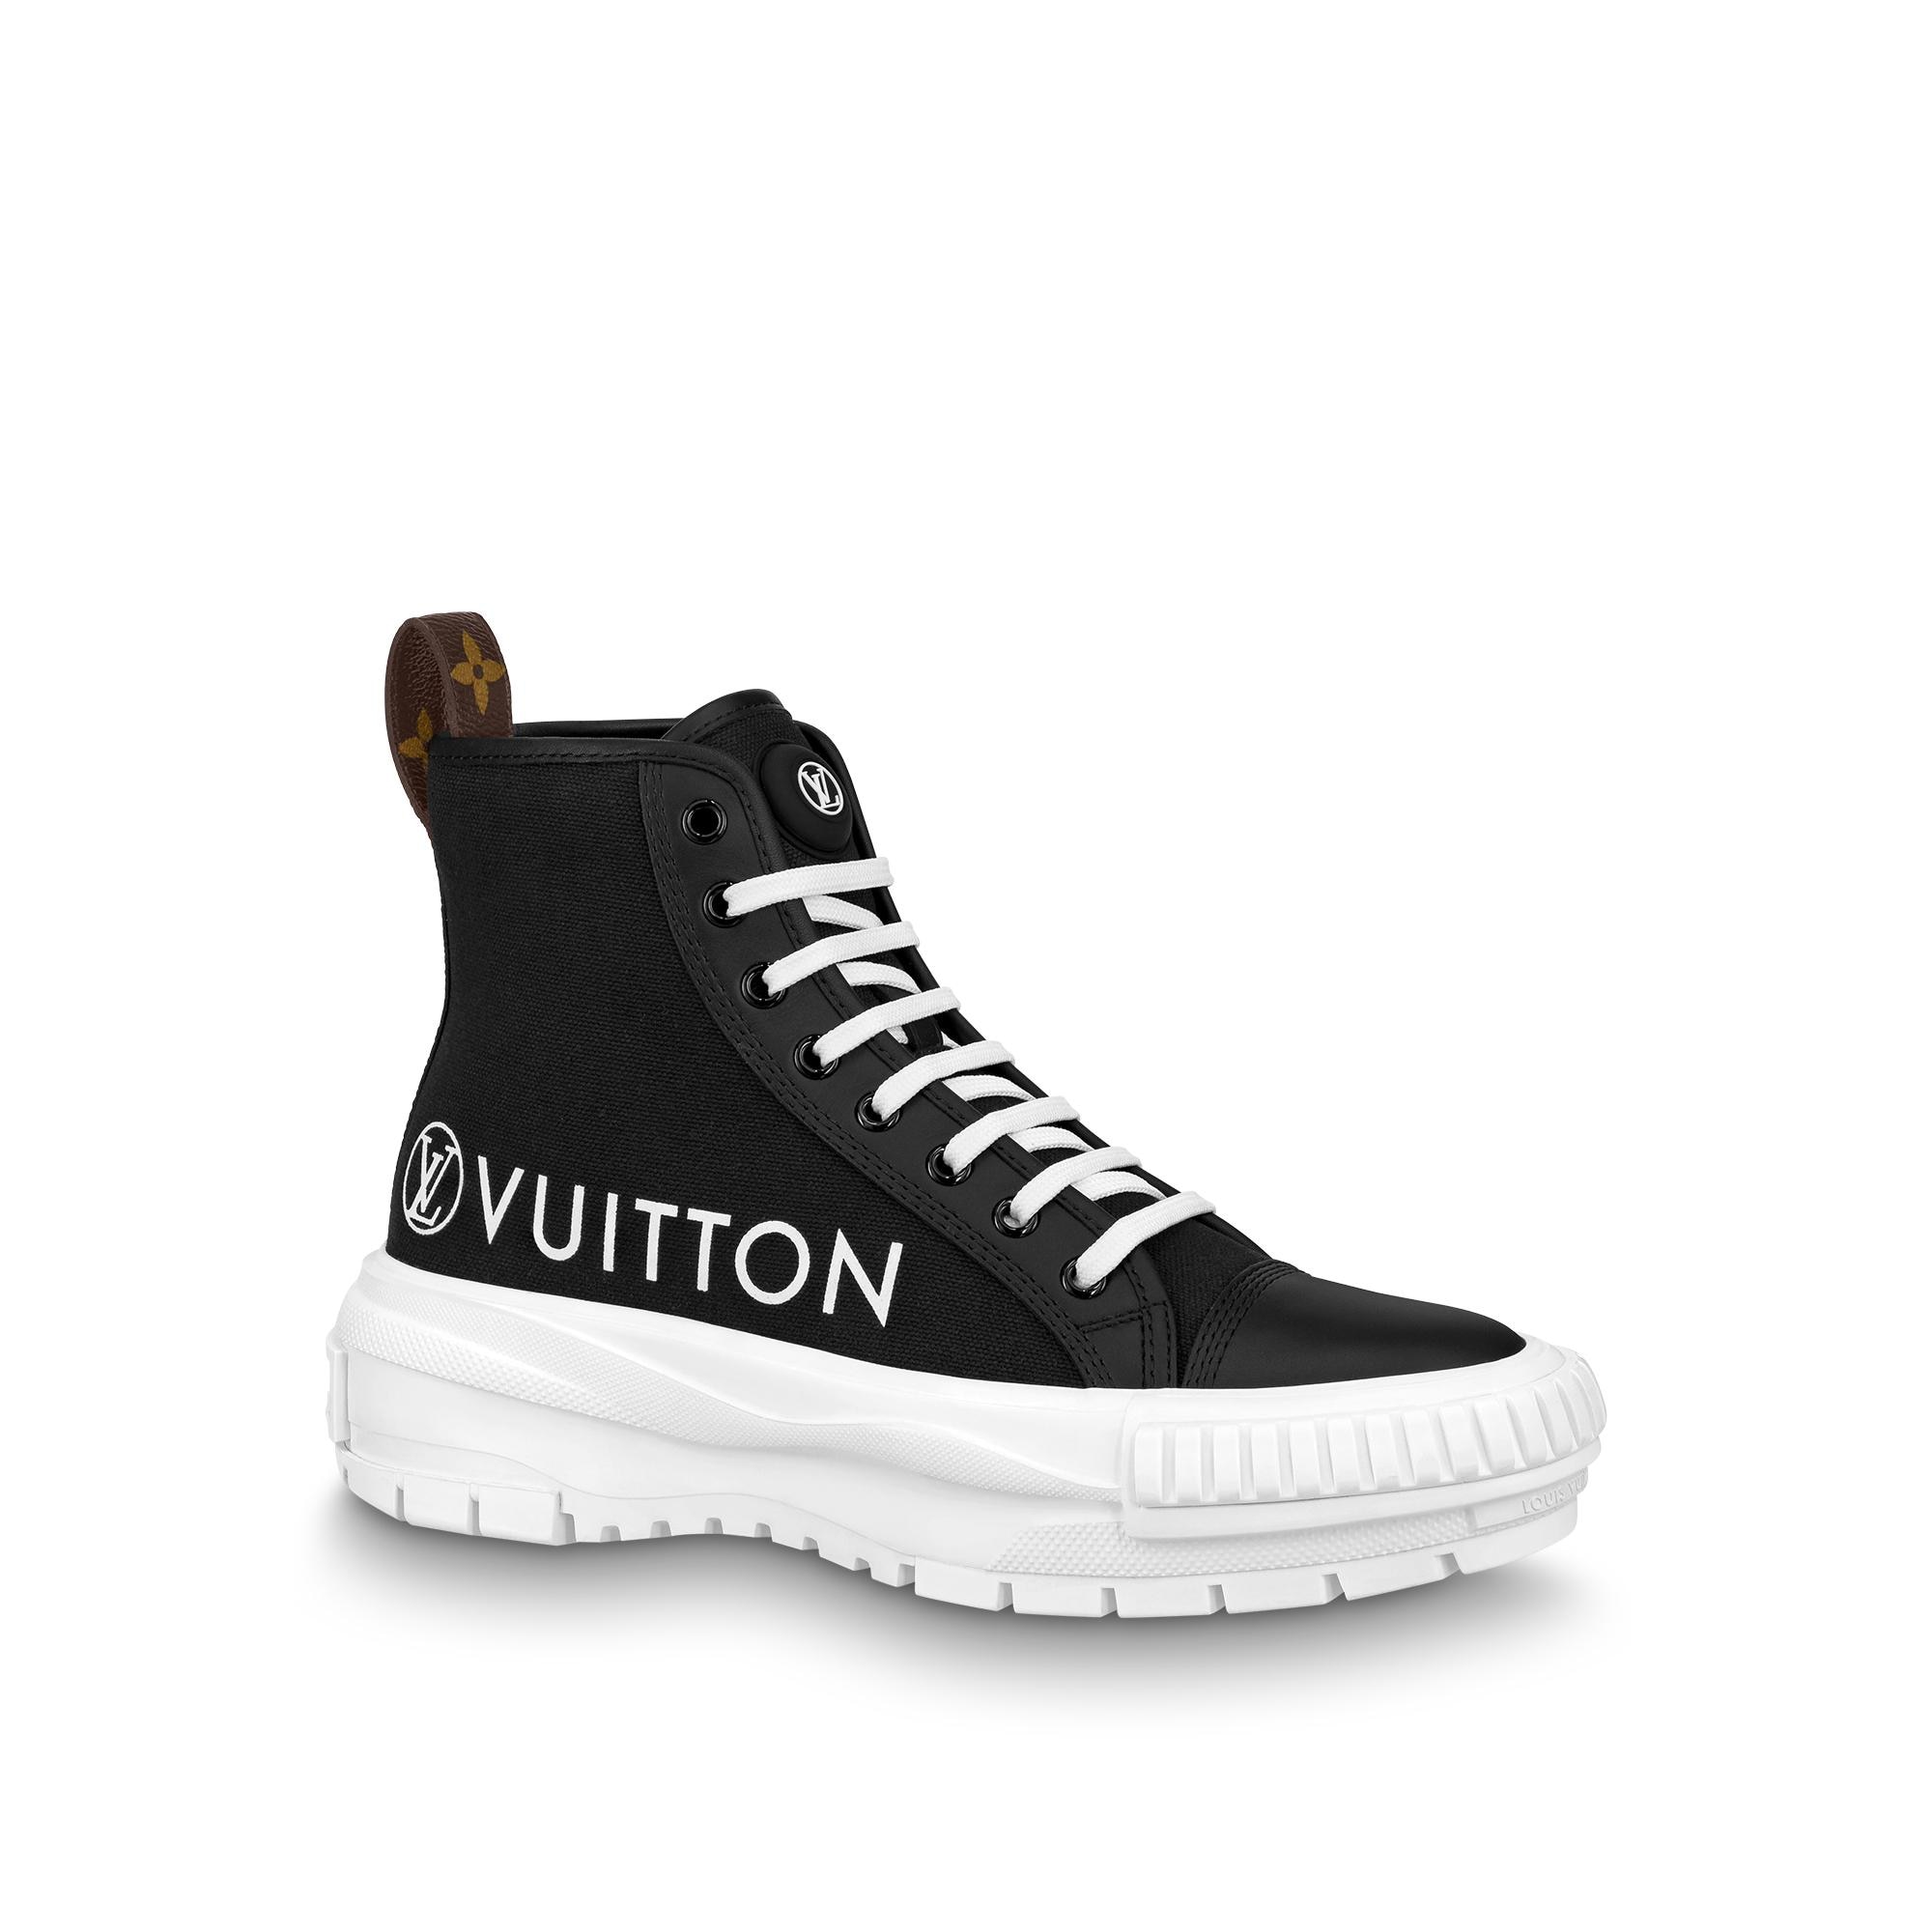 Louis Vuitton Nova Flat Sandal in Black - Shoes 1A9CZK - $122.20 